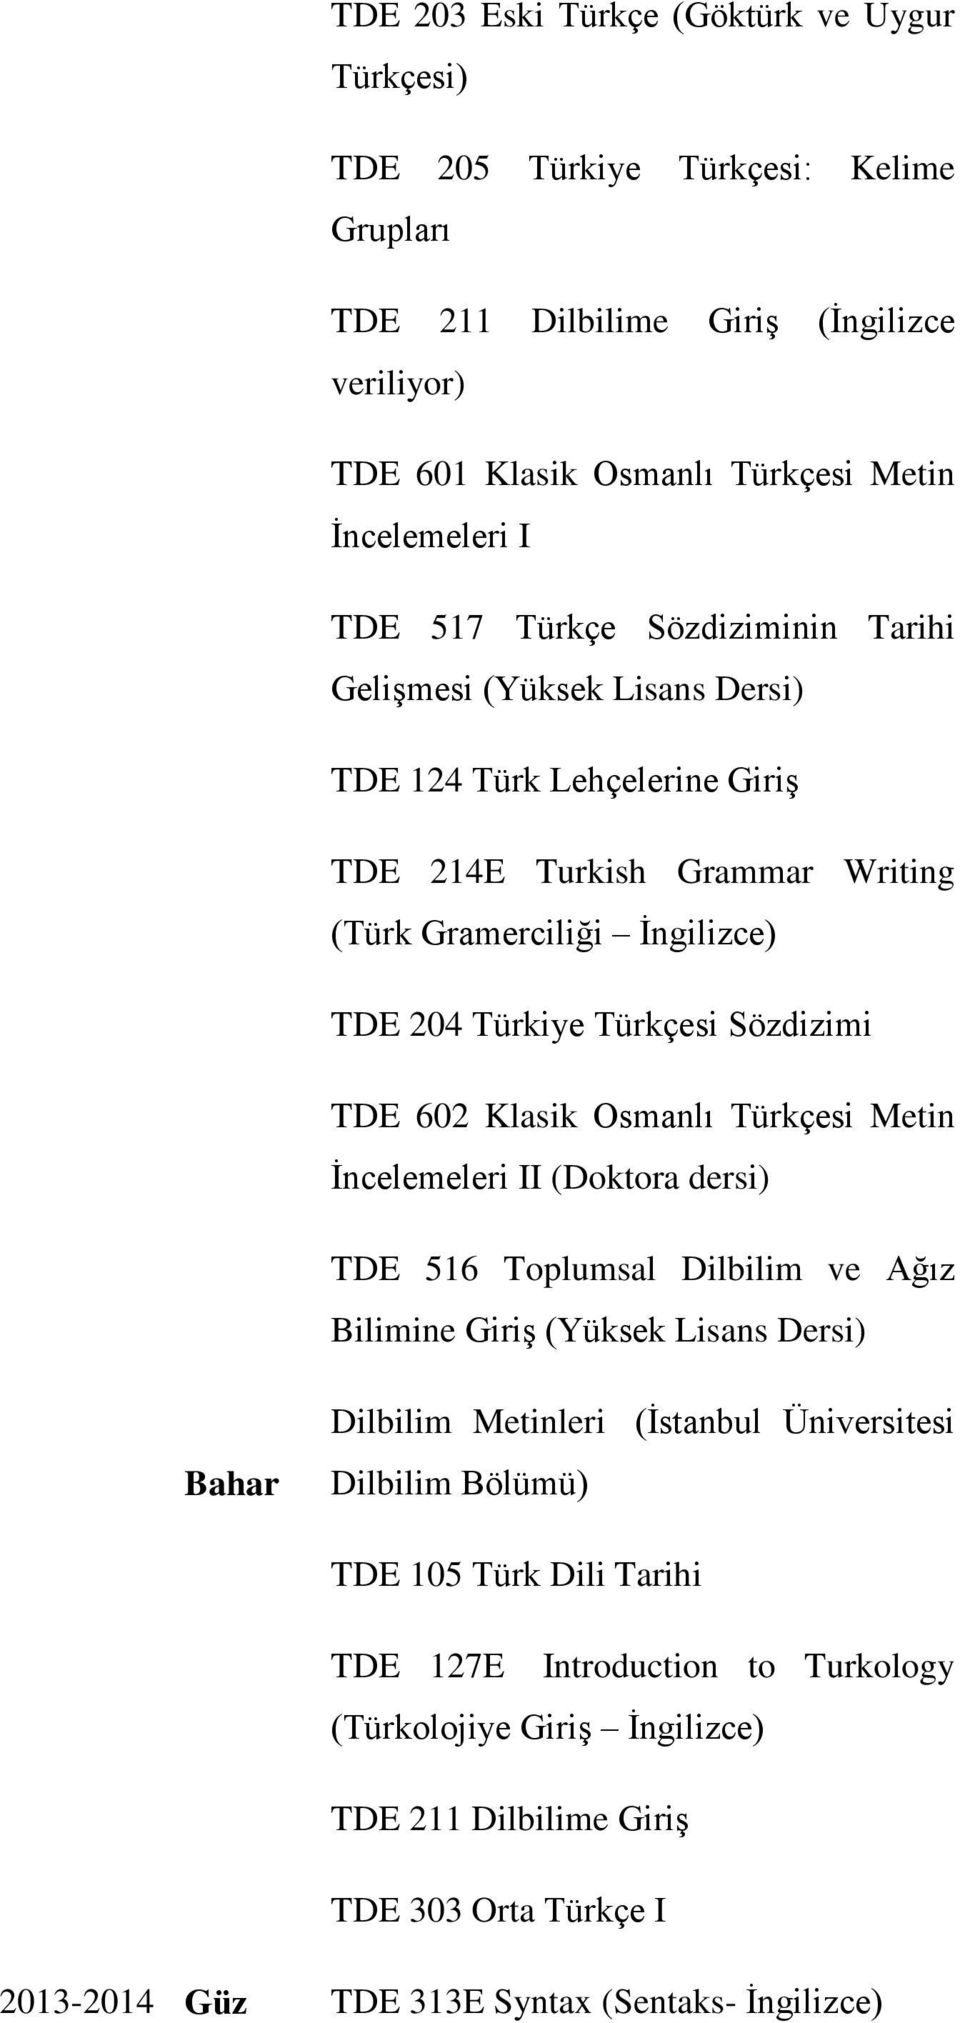 TDE 602 Klasik Osmanlı Türkçesi Metin İncelemeleri II (Doktora dersi) TDE 516 Toplumsal Dilbilim ve Ağız Bilimine Giriş (Yüksek Lisans Dersi) Bahar Dilbilim Metinleri (İstanbul Üniversitesi